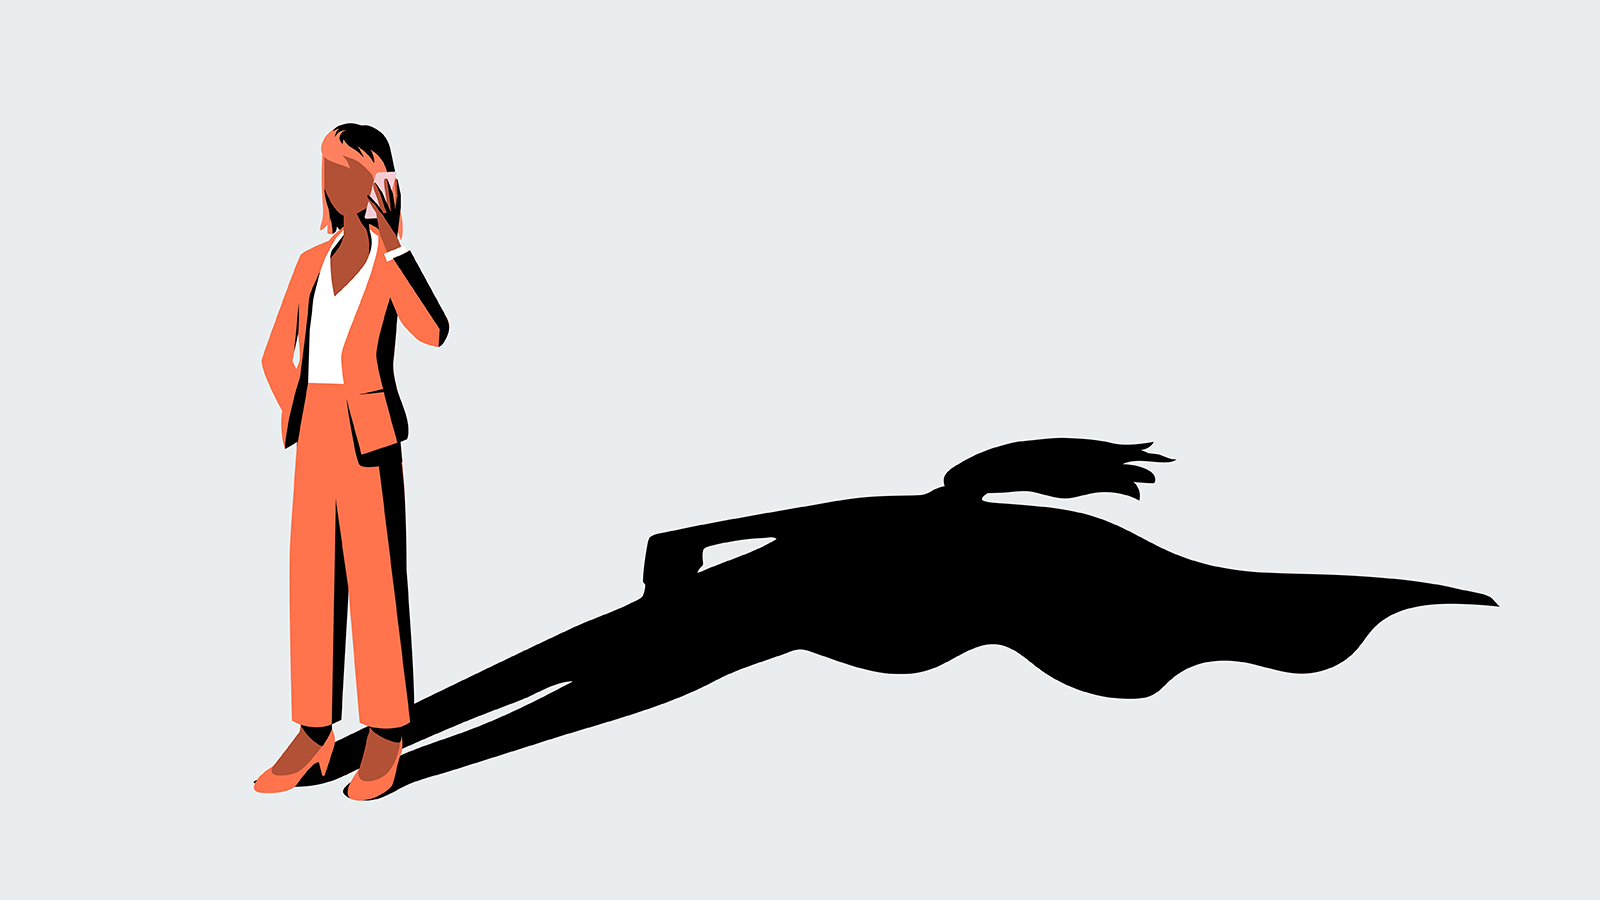 Illustration von Frau mit Handy an der Hand. Sie wirft einen Schatten, der ein Cape andeutet. Die Illustration steht symbolisch für das "heldenhafte" Engagement von der Maritim Hotelgesellschaft auf kununu.